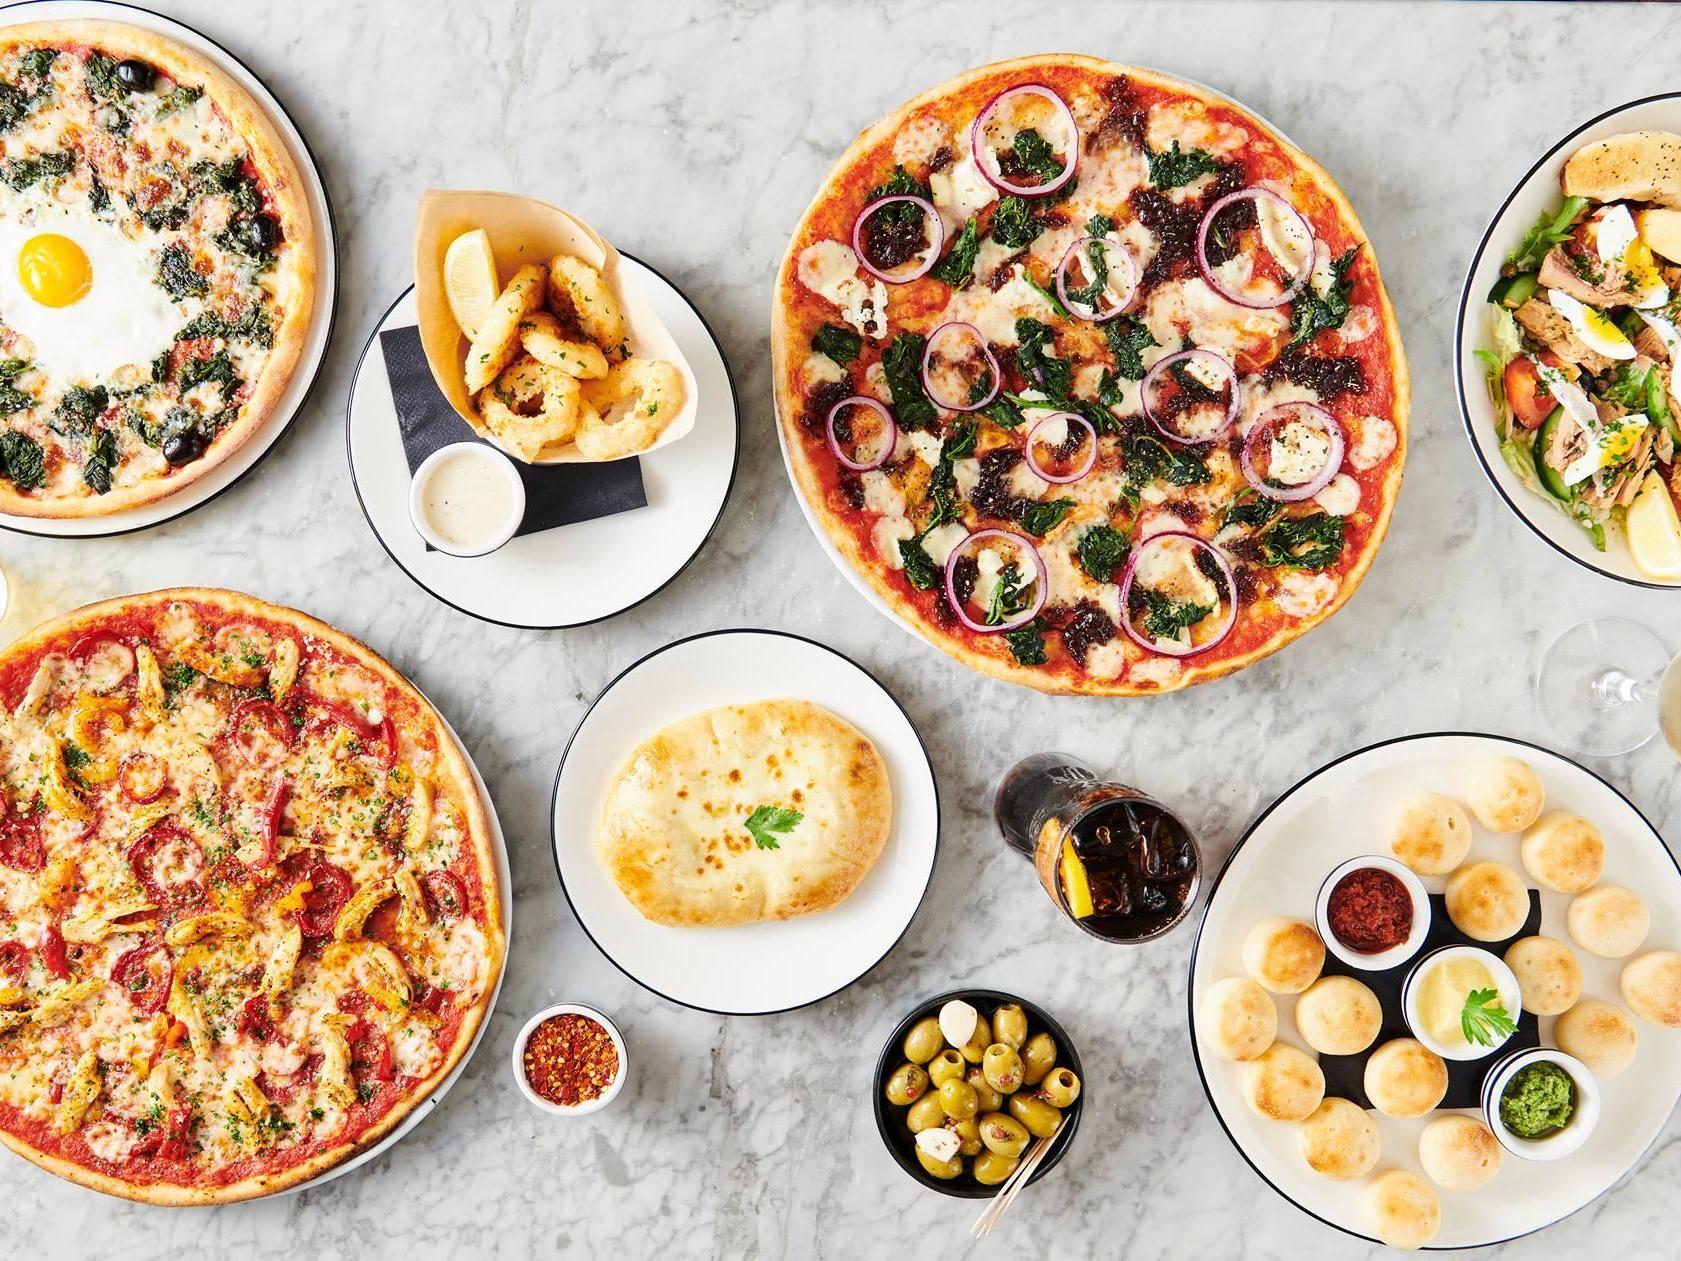 ‘Pizza Express’ cerrará casi 70 restaurantes poniendo en riesgo 1.100 empleos